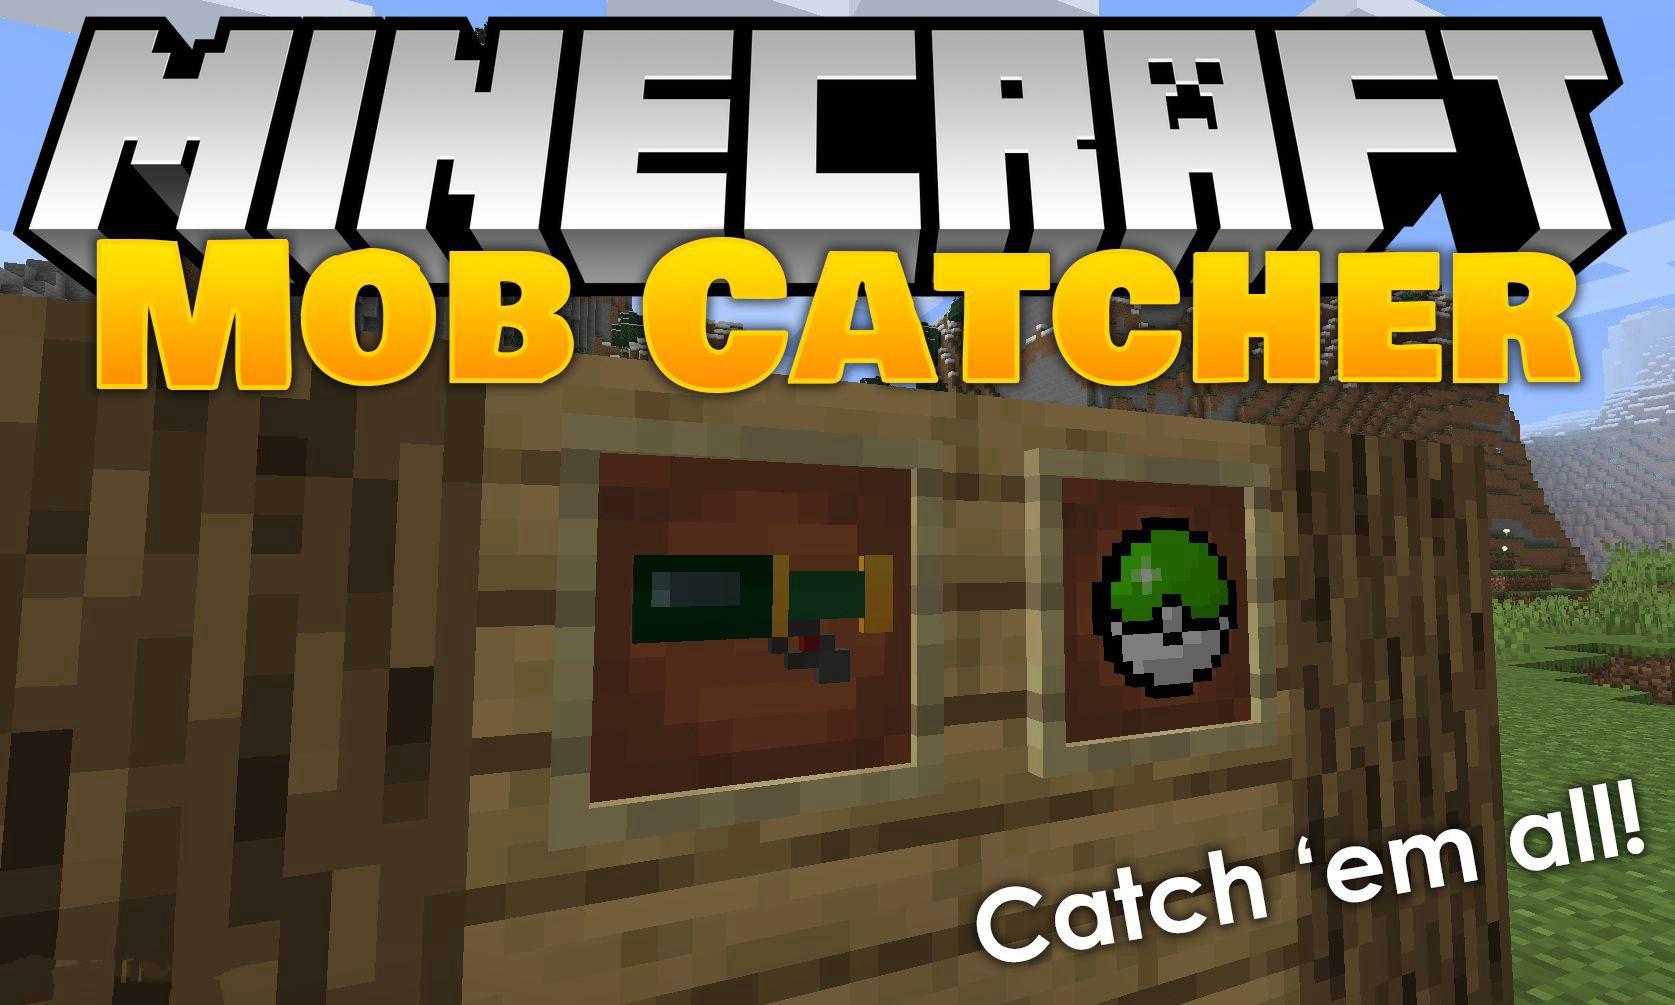 我的世界生物捕捉 Mob Catcher Mod Minecraft中文下载站